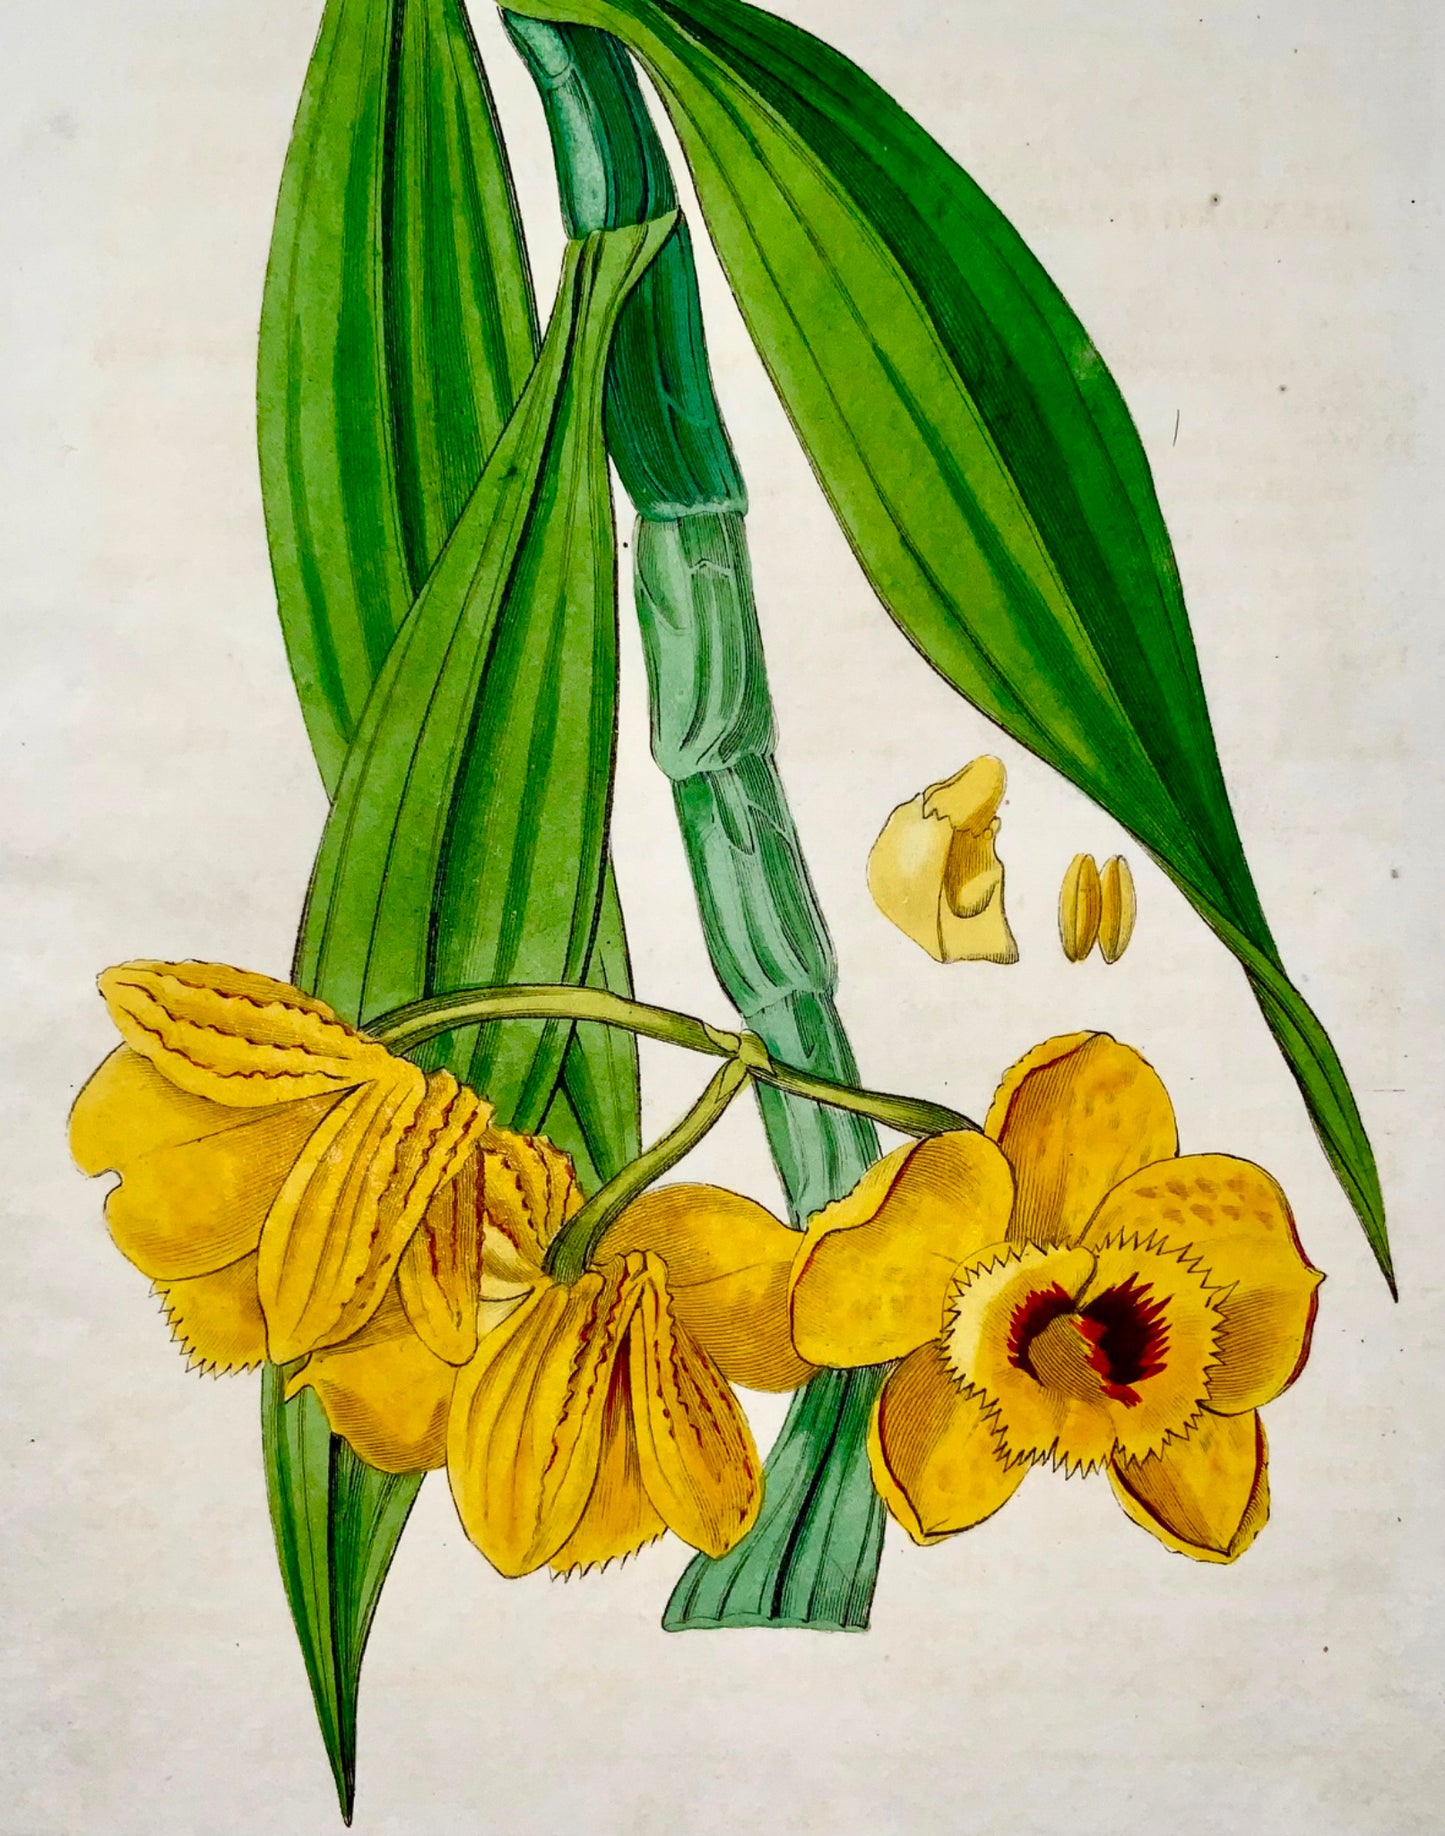 1830 Orchidea, S. Watts, incisione su rame, bel colore originale a mano, botanica